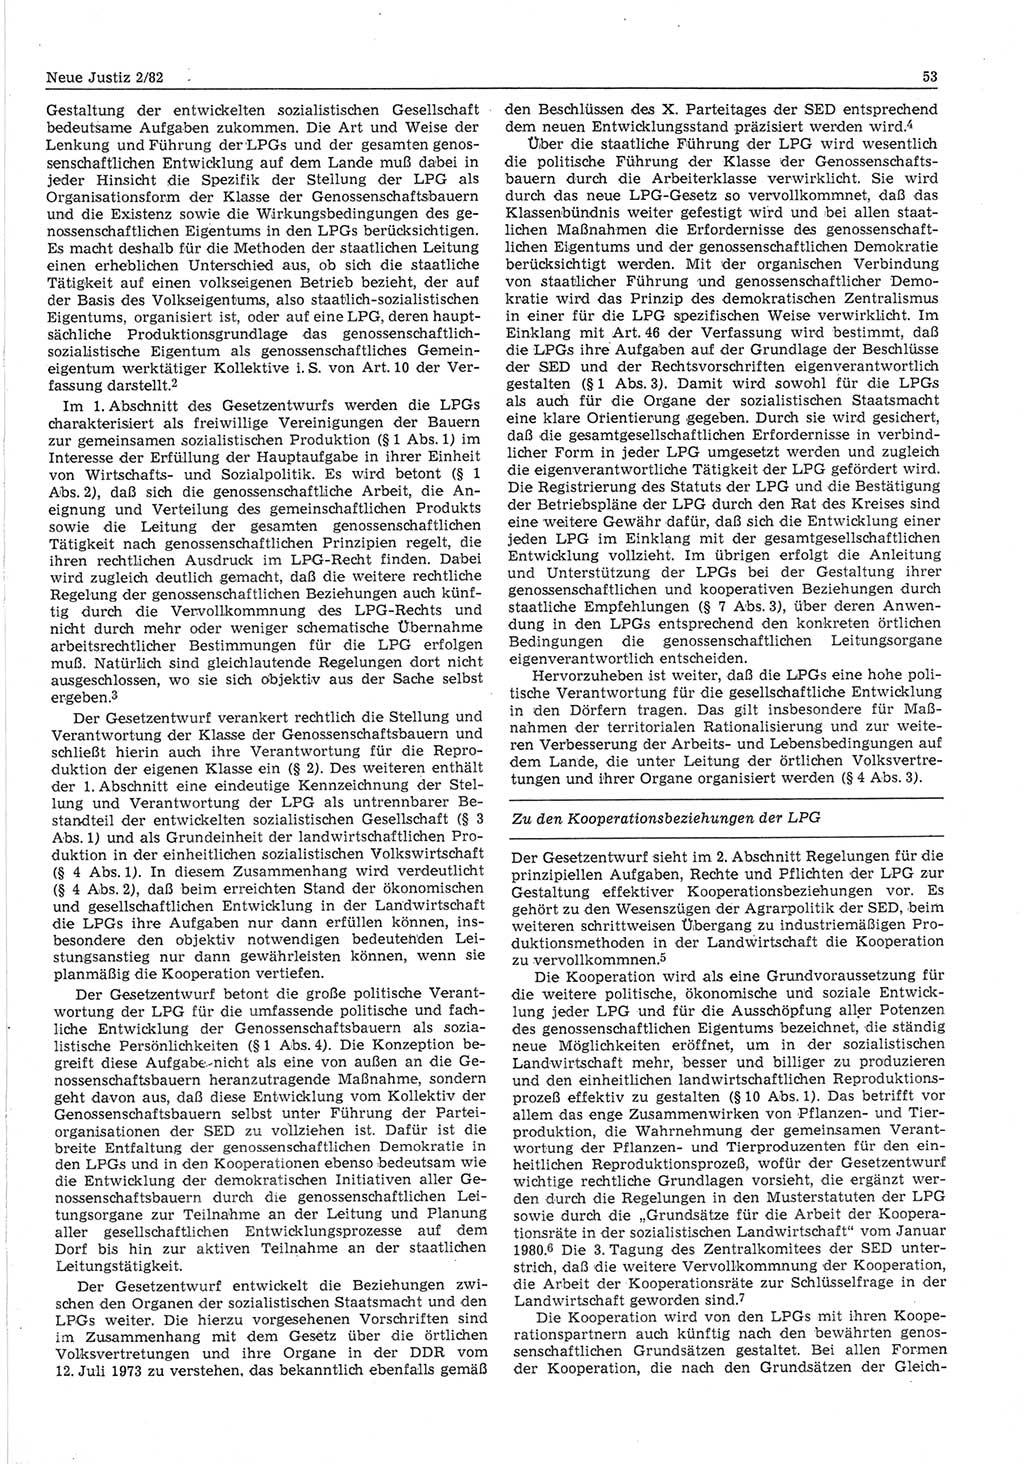 Neue Justiz (NJ), Zeitschrift für sozialistisches Recht und Gesetzlichkeit [Deutsche Demokratische Republik (DDR)], 36. Jahrgang 1982, Seite 53 (NJ DDR 1982, S. 53)